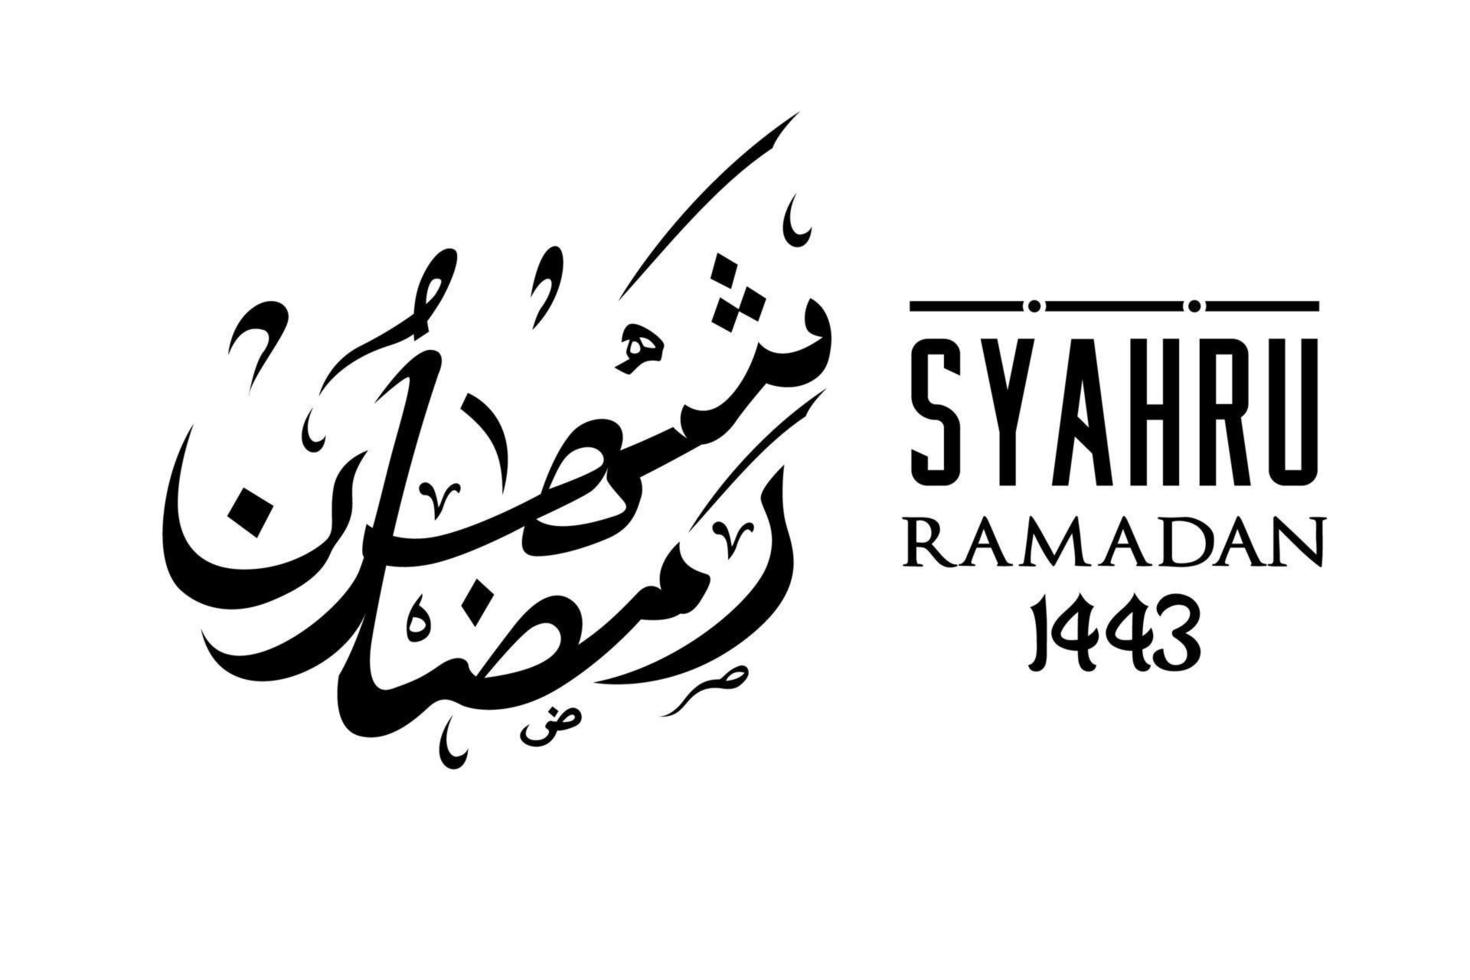 syahru ramadan escrevendo inspiração de design de caligrafia árabe vetor